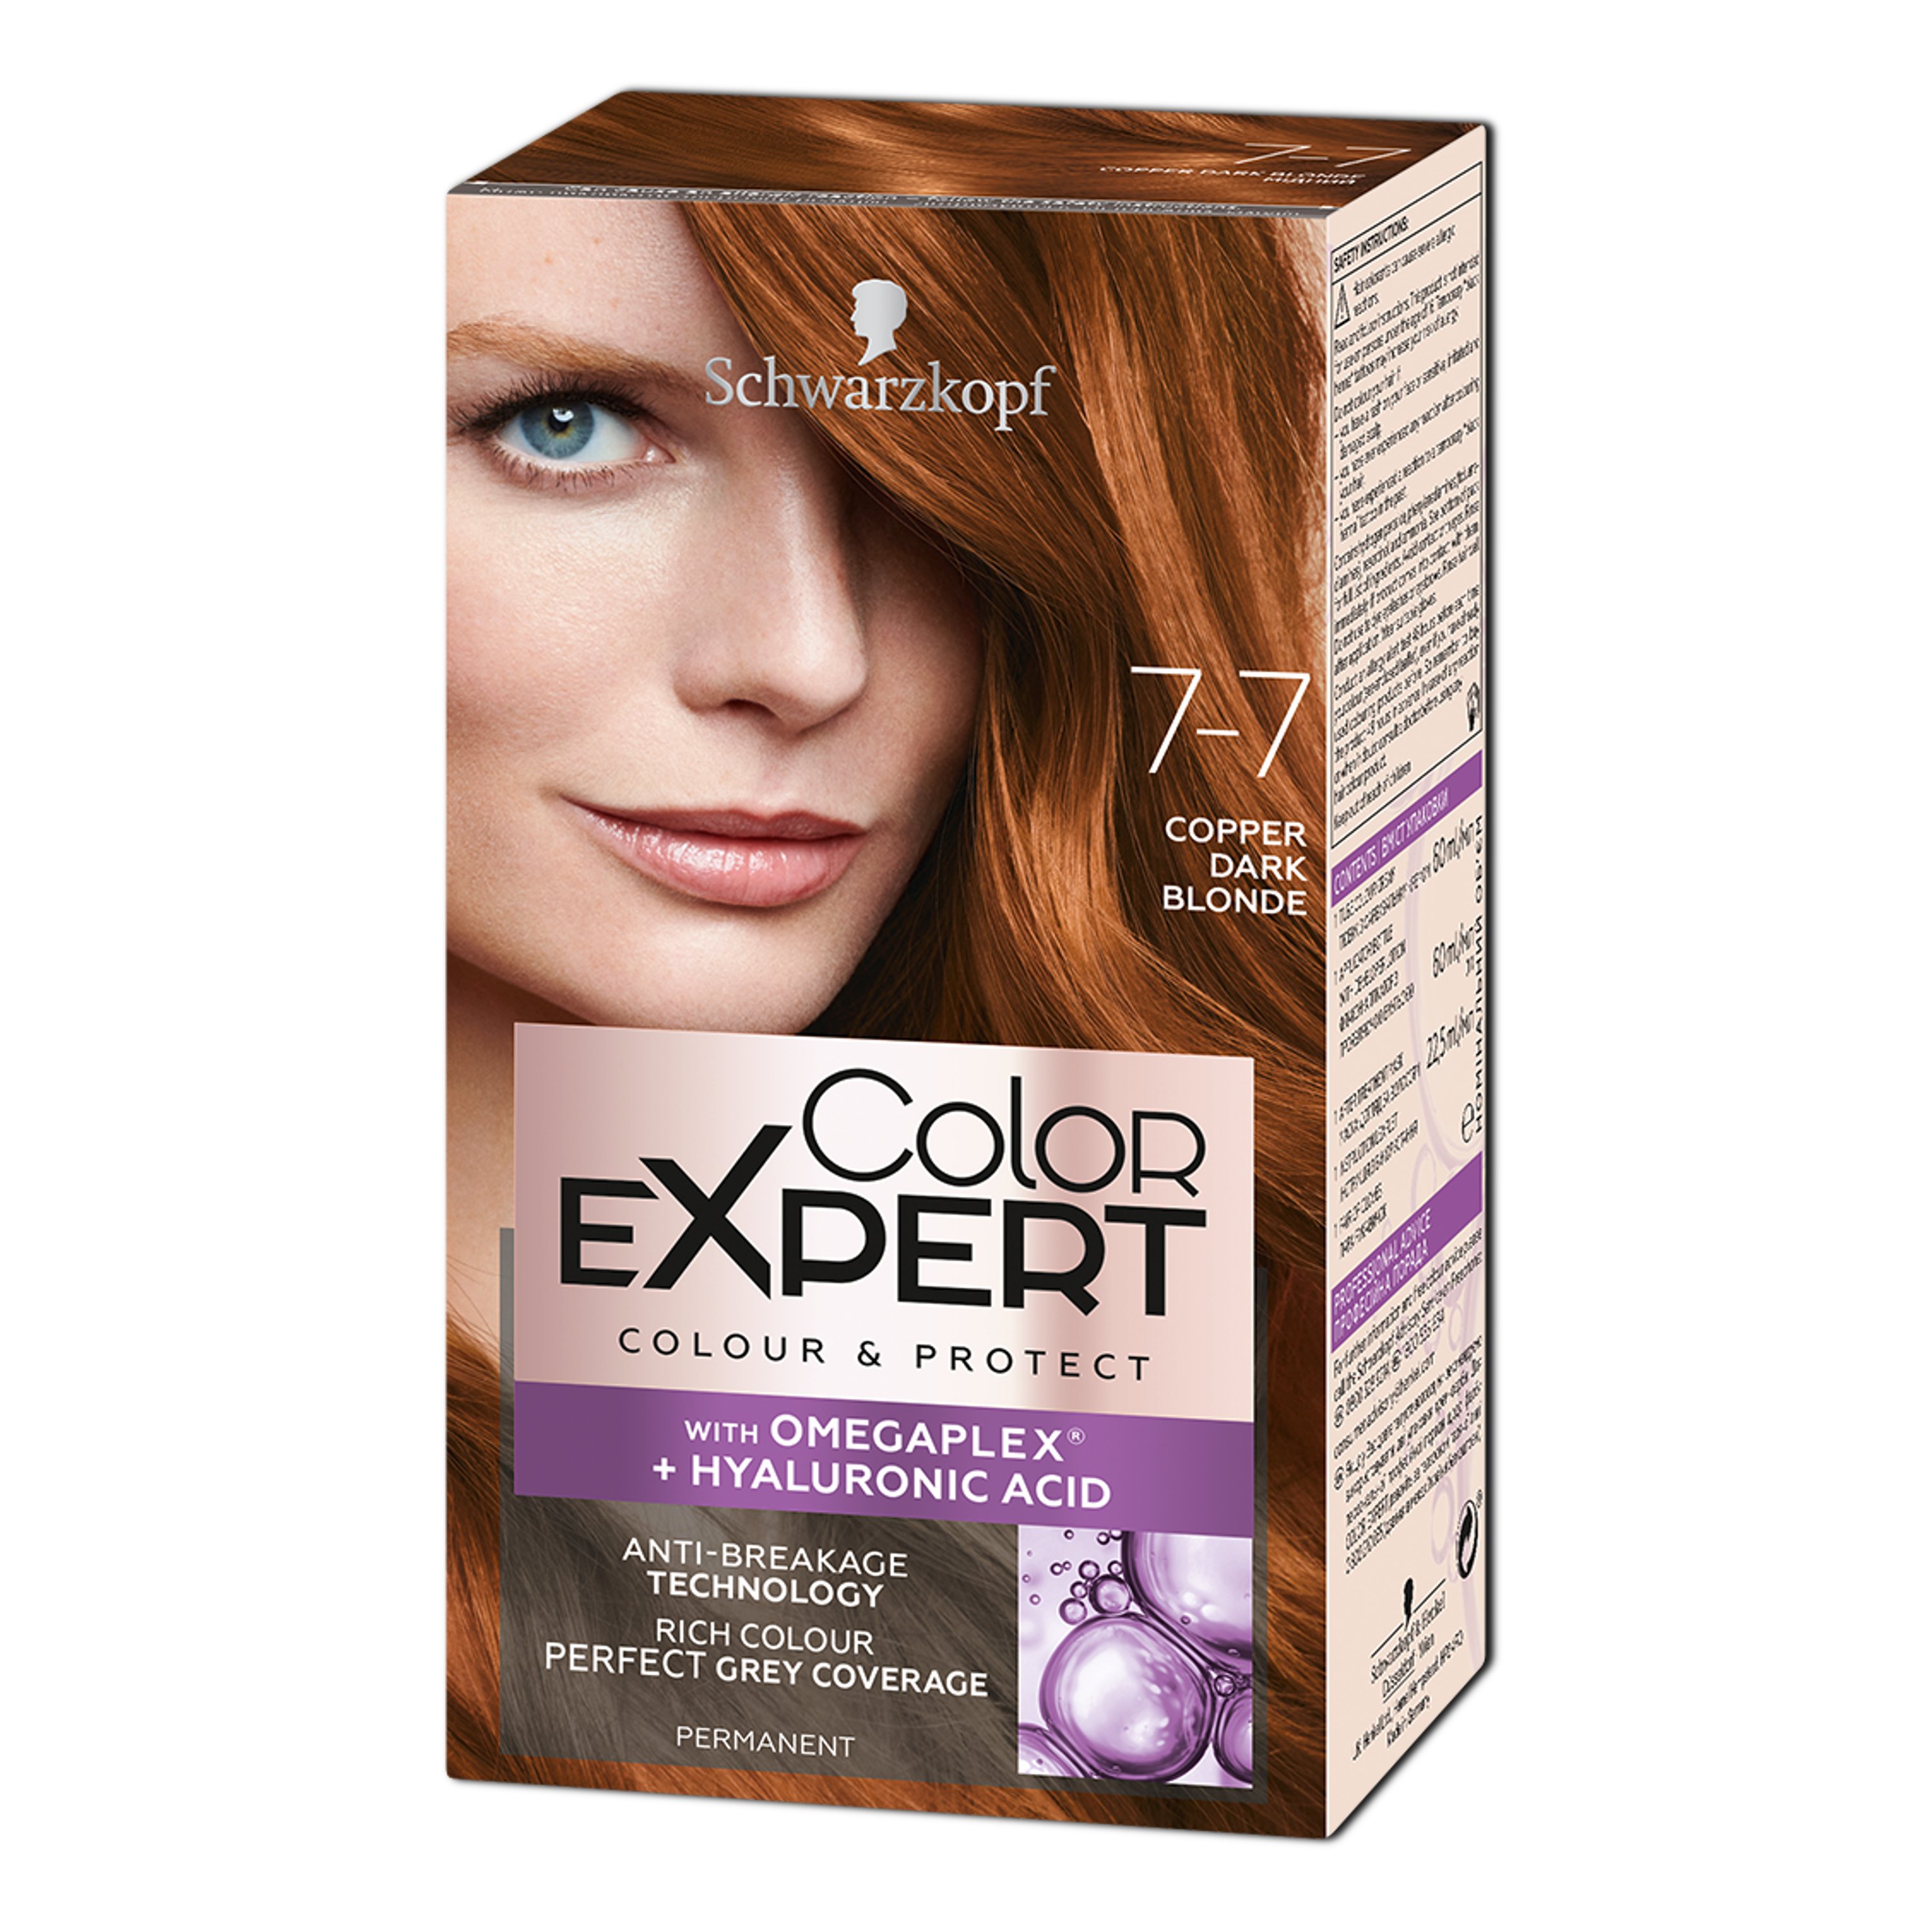 Крем-фарба для волосся Schwarzkopf Color Expert, з гіалуроновою кислотою, відтінок 7-7 (Мідний), 142,5 мл - фото 1